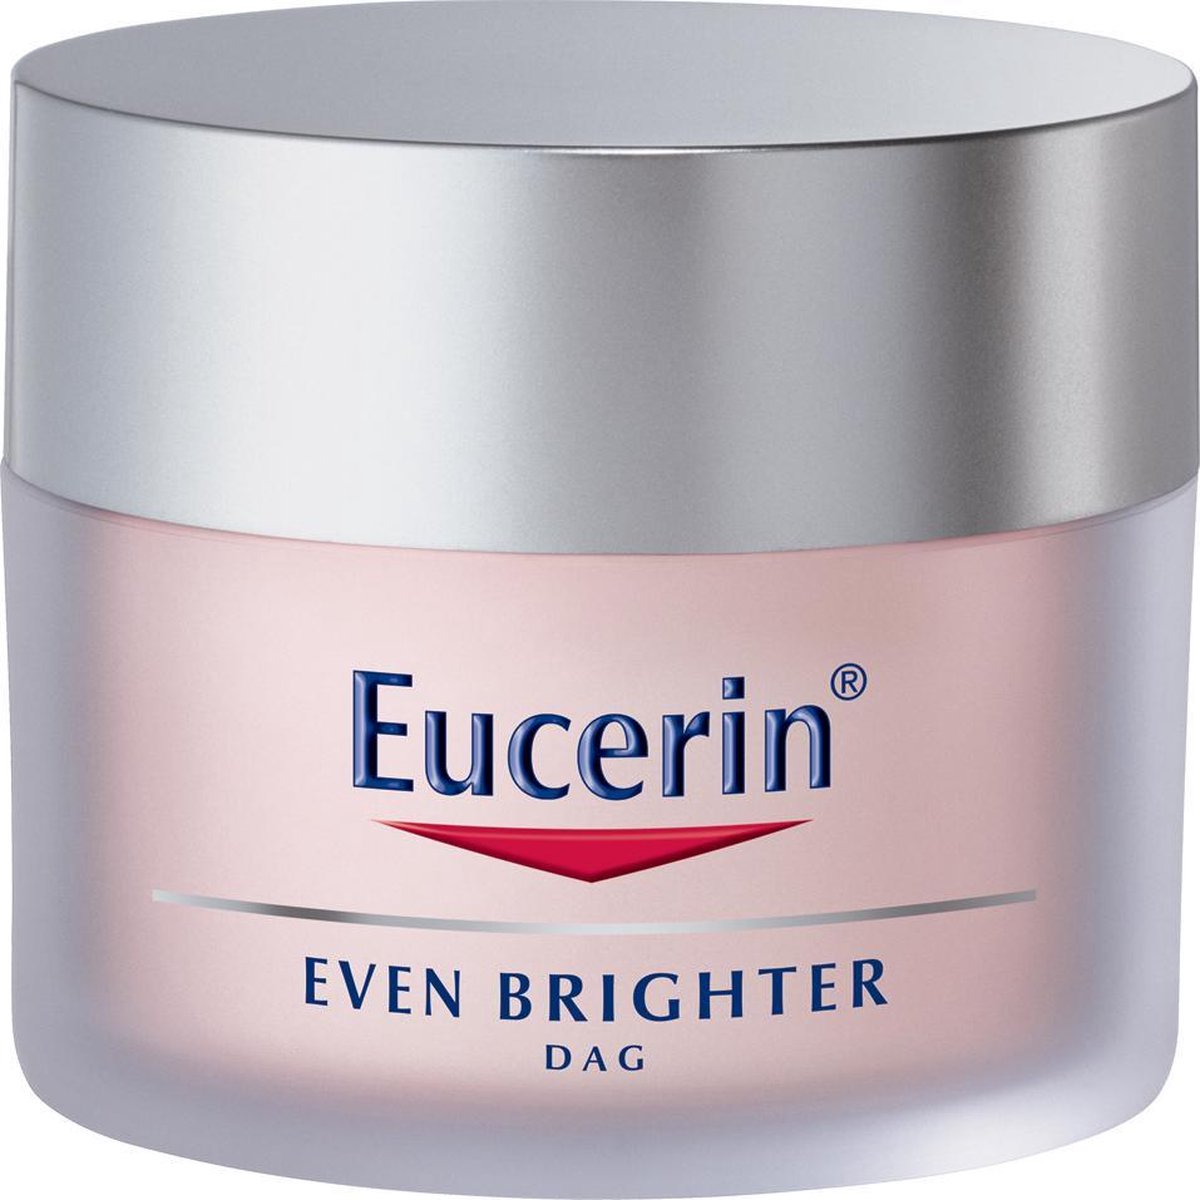 Eucerin Brighter Pigmentverminderende dagcrème - 50 ml | bol.com